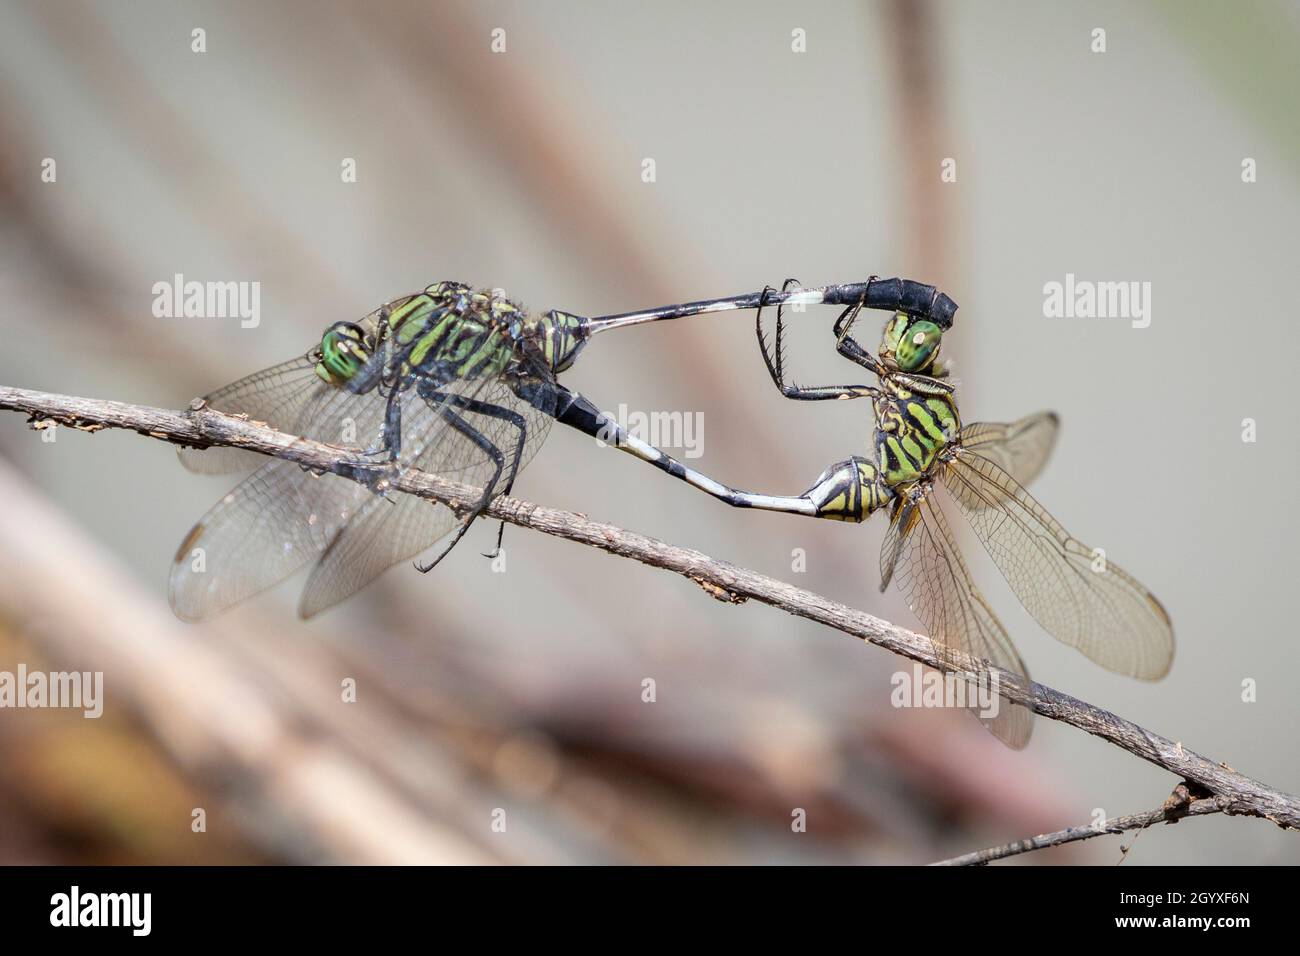 Immagine di verde skimmer dragonfly (Orthetrum sabina) si accoppiano su rami secchi su sfondo naturale. Insetto. Animale. Foto Stock